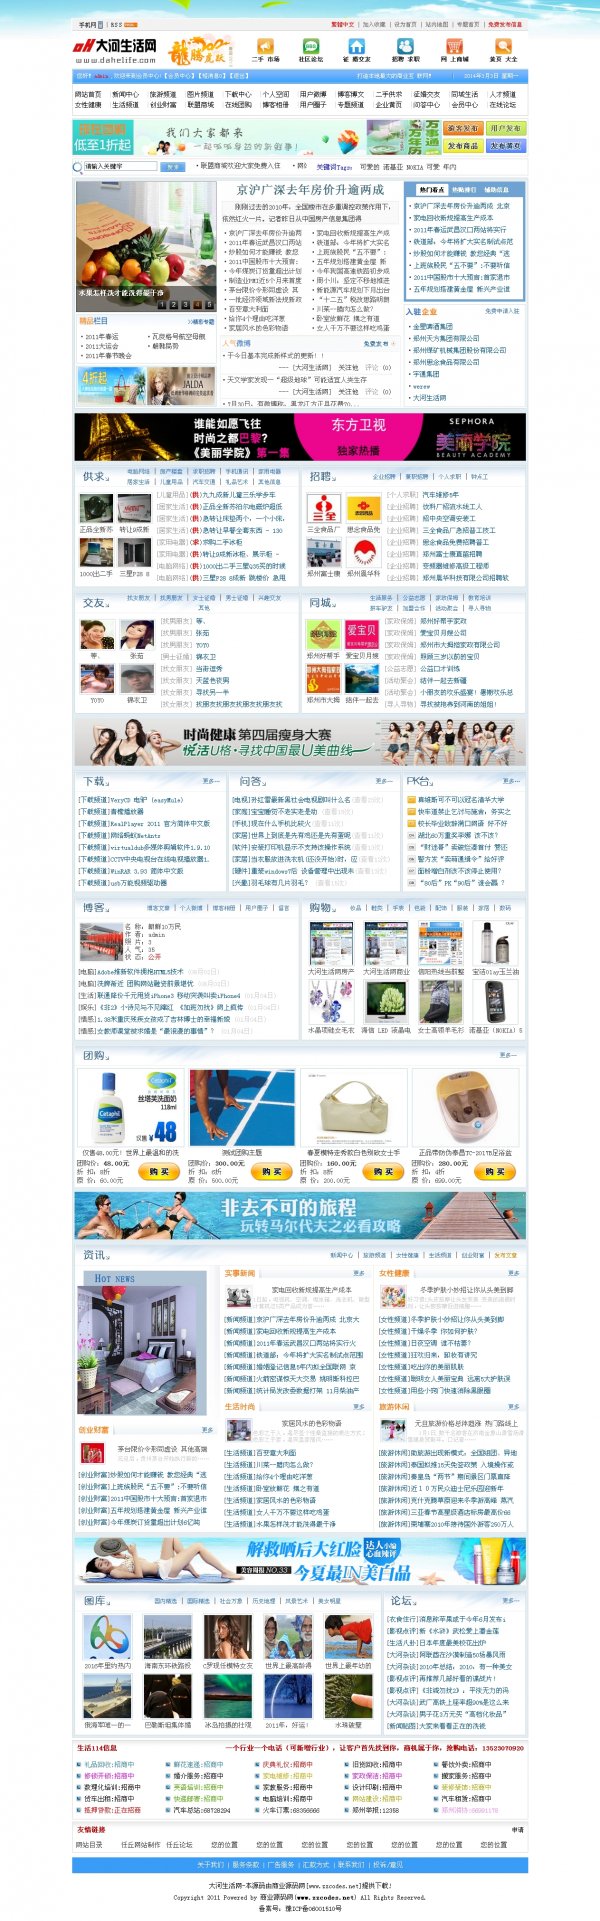 大型地方门户网站大河生活网商业版含新闻论坛交友旅游